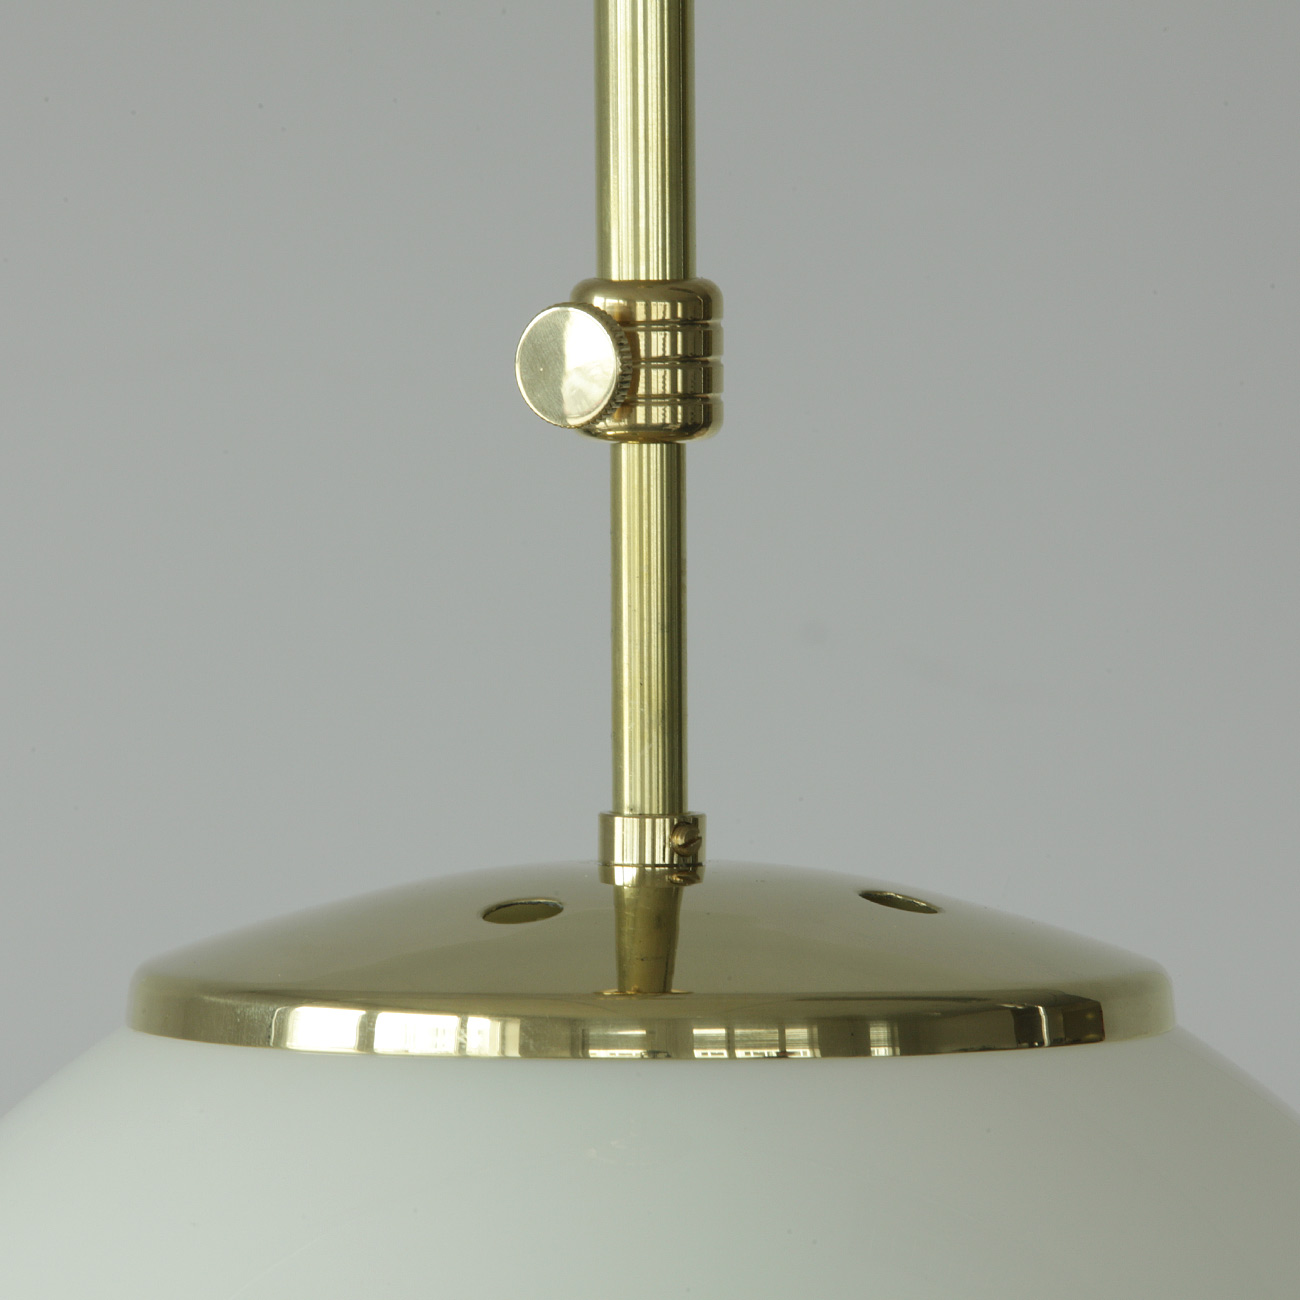 Kugelglas-Hängeleuchte an Pendelrohr (Ø 30 cm, Messing poliert): „Mönchskappe“ und Einstellschraube, hier Messing hochglanz poliert